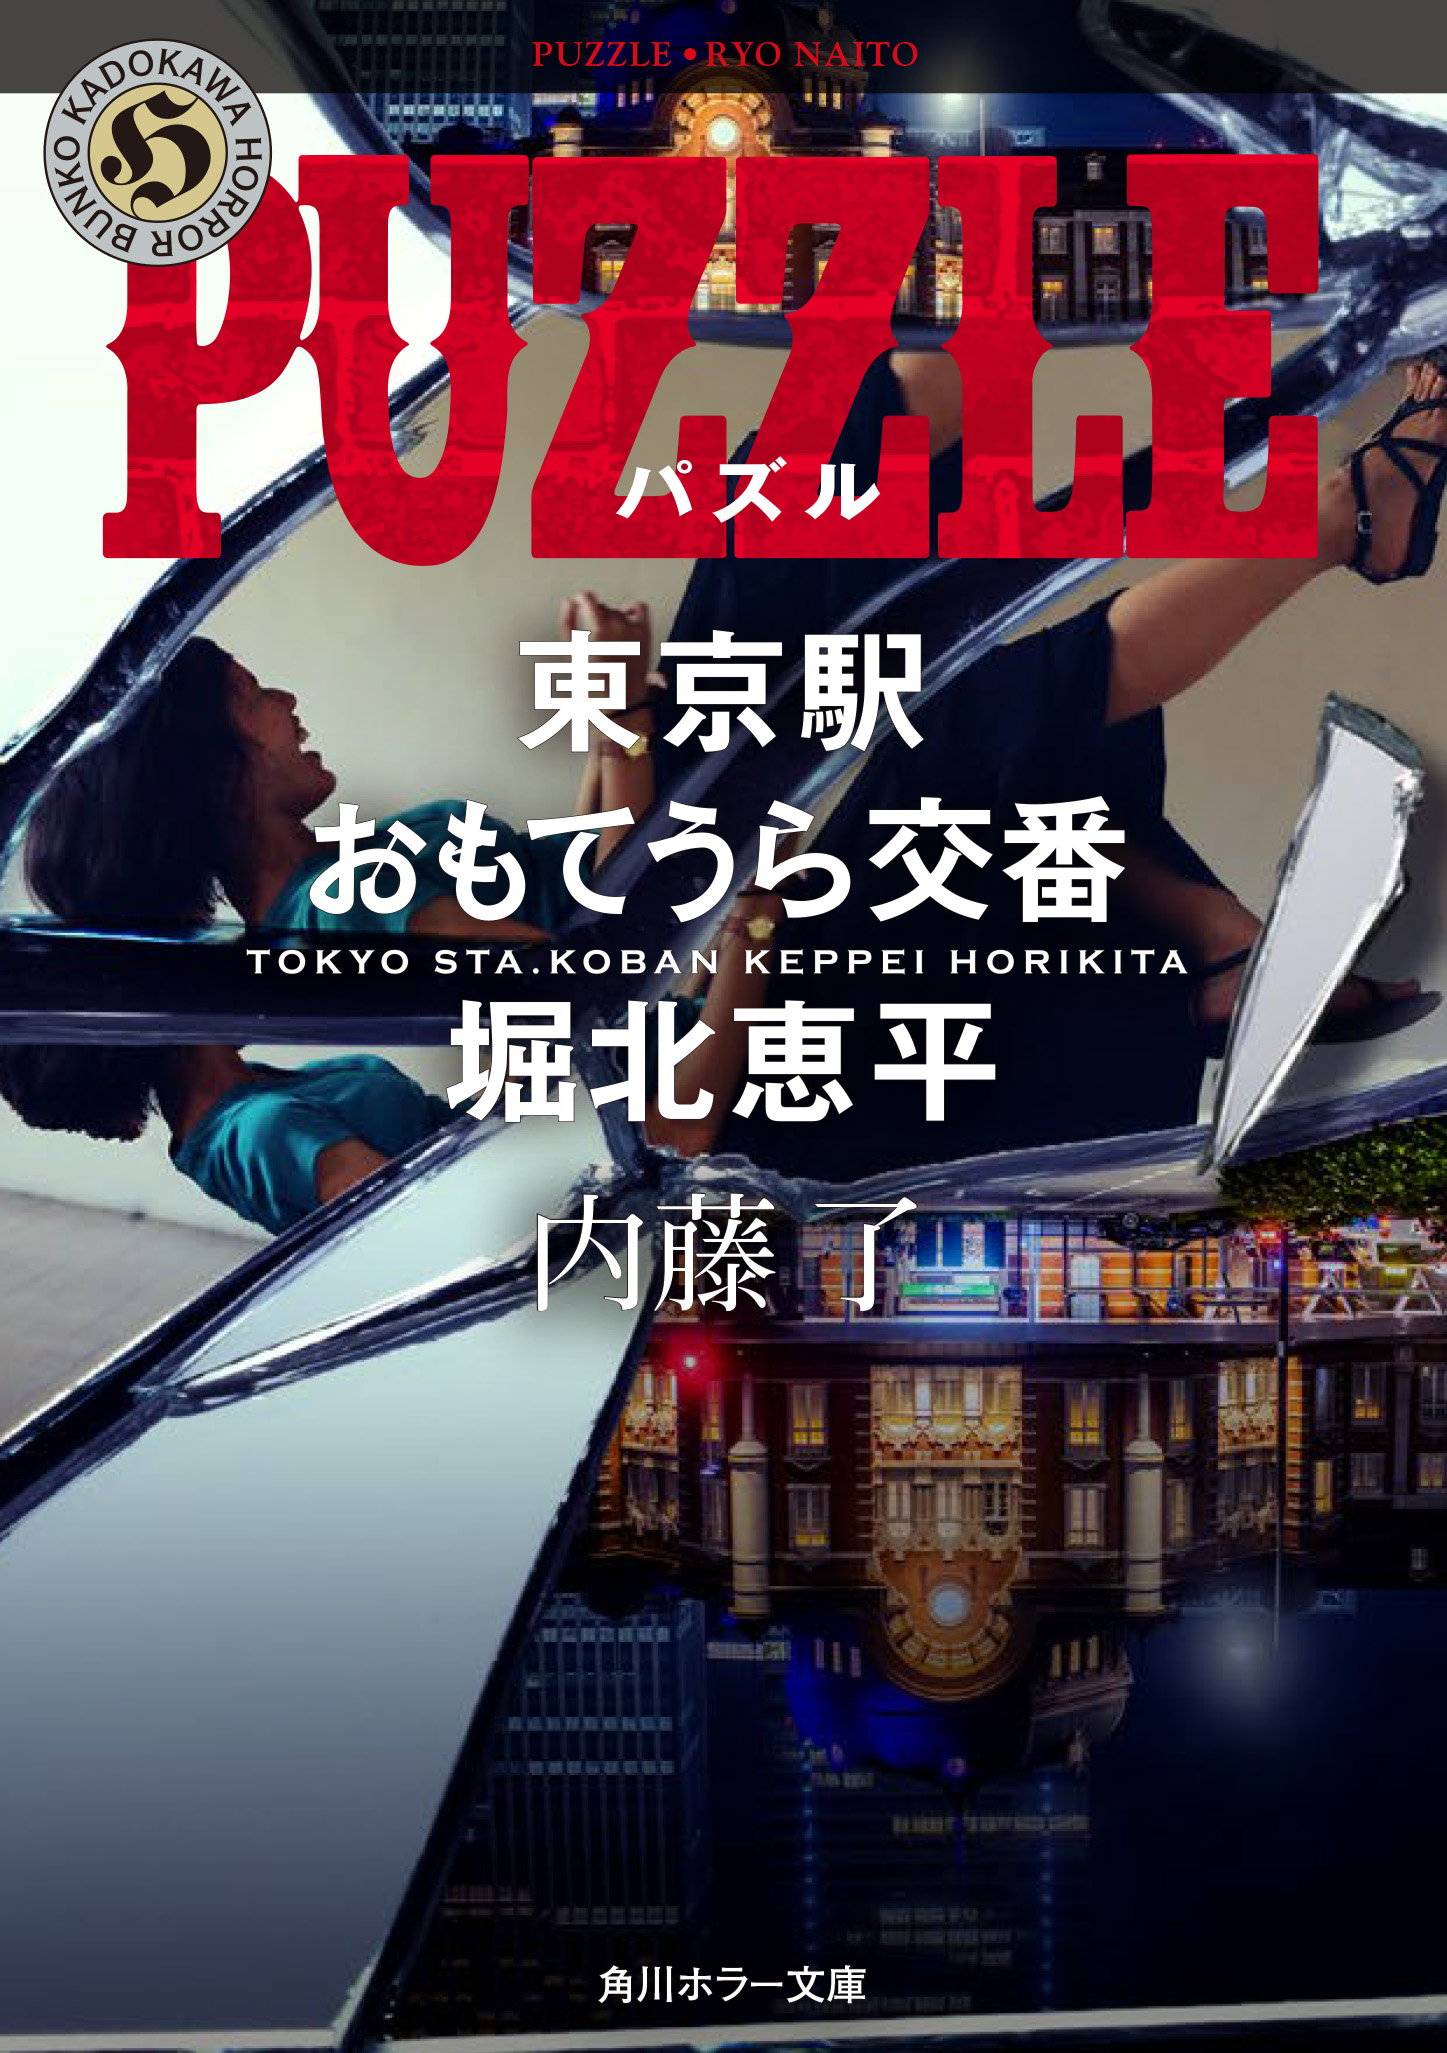 PUZZLE　東京駅おもてうら交番・堀北恵平の商品画像